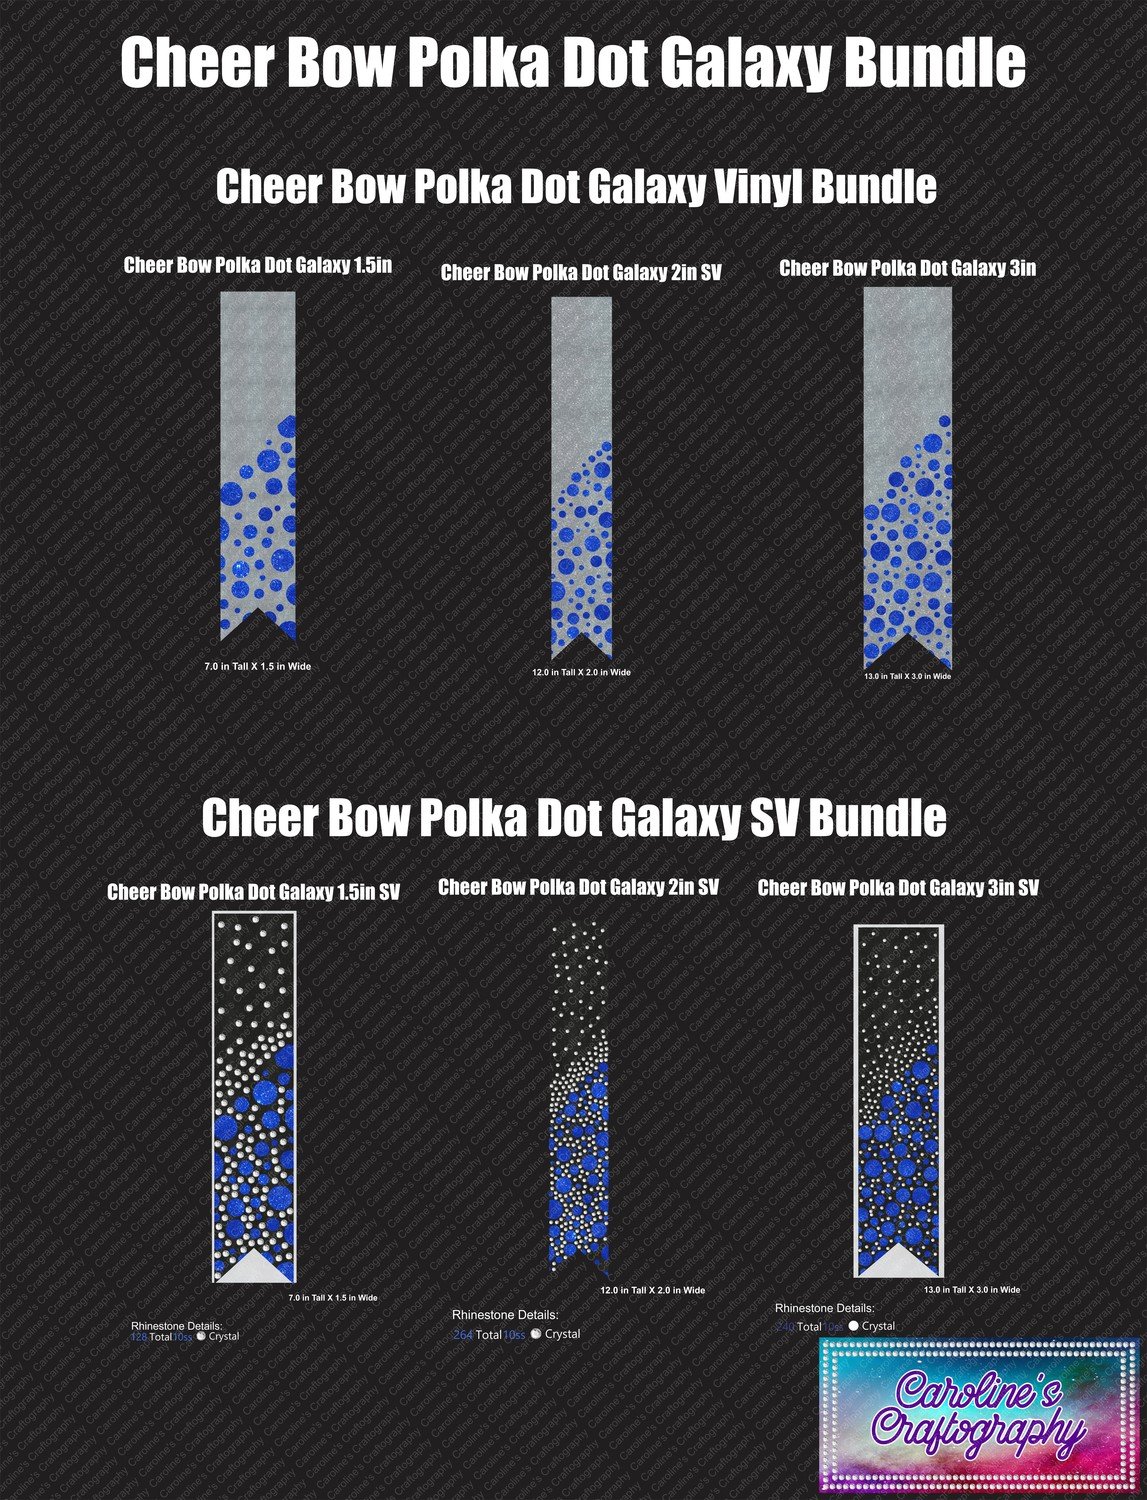 Polka Dot Galaxy Cheer Bow Bundle